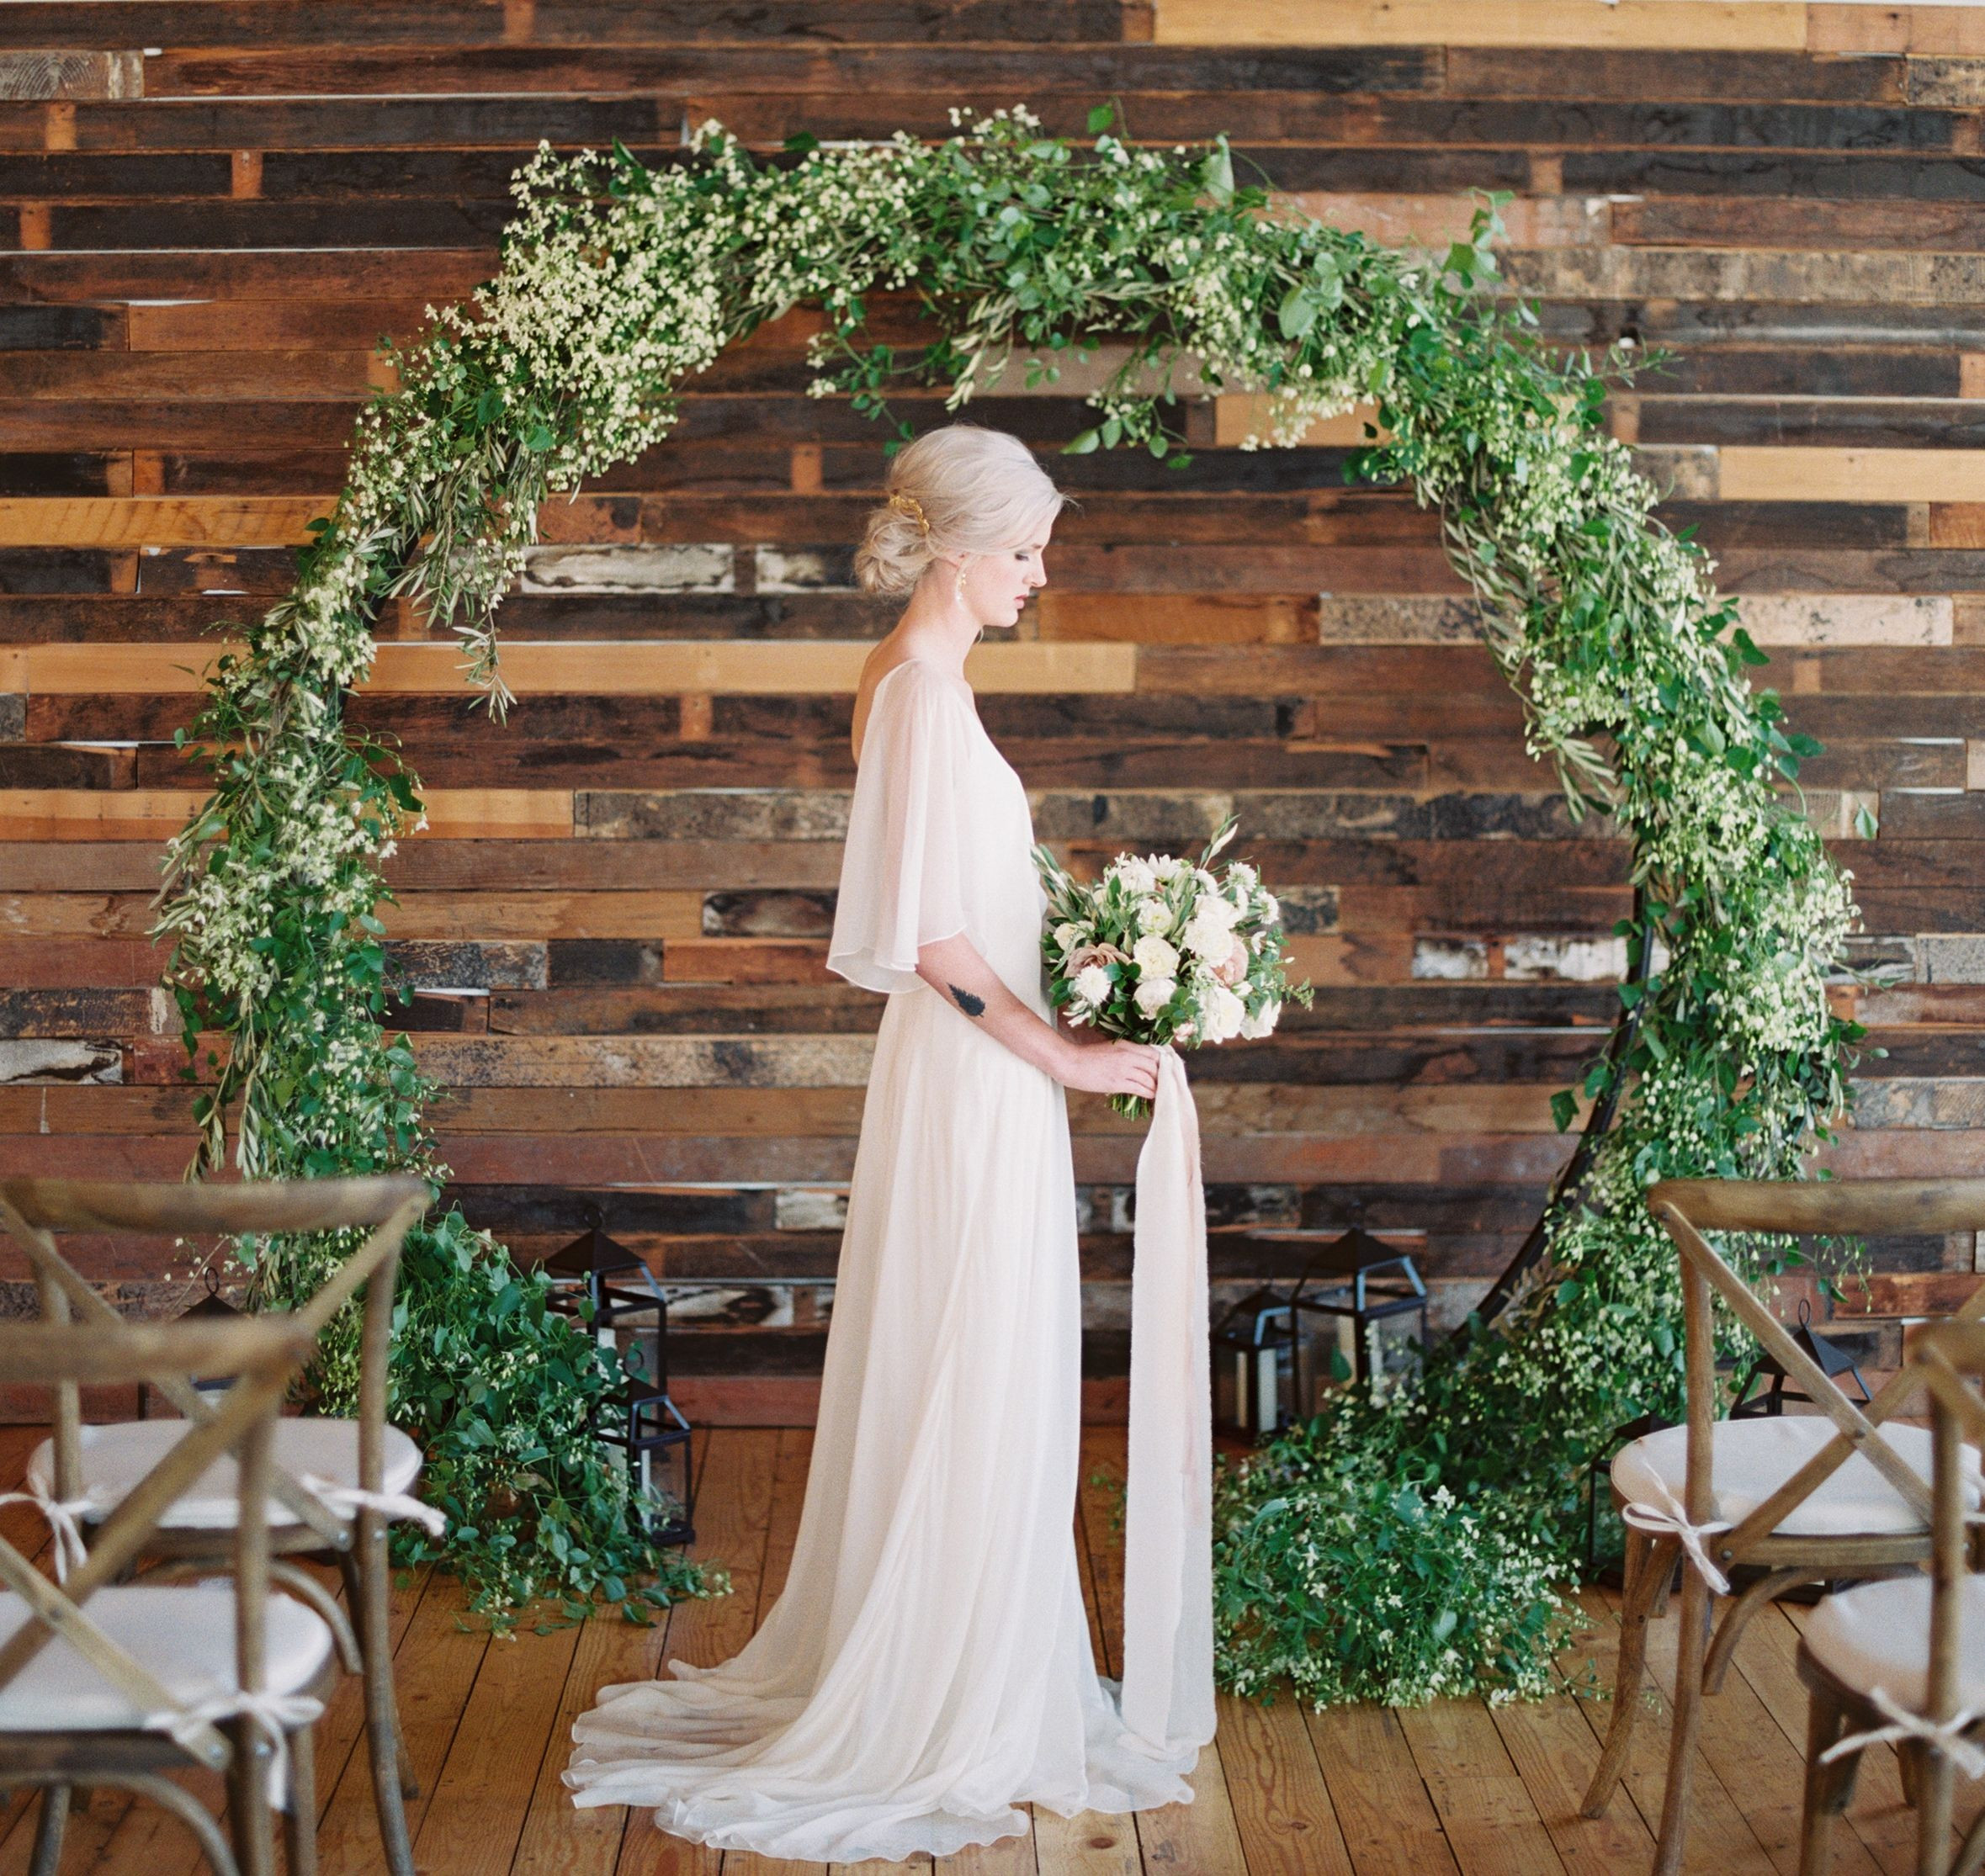 DIY Wedding Ceremony Backdrop
 Circular arch perfect wedding backdrop for the ceremony